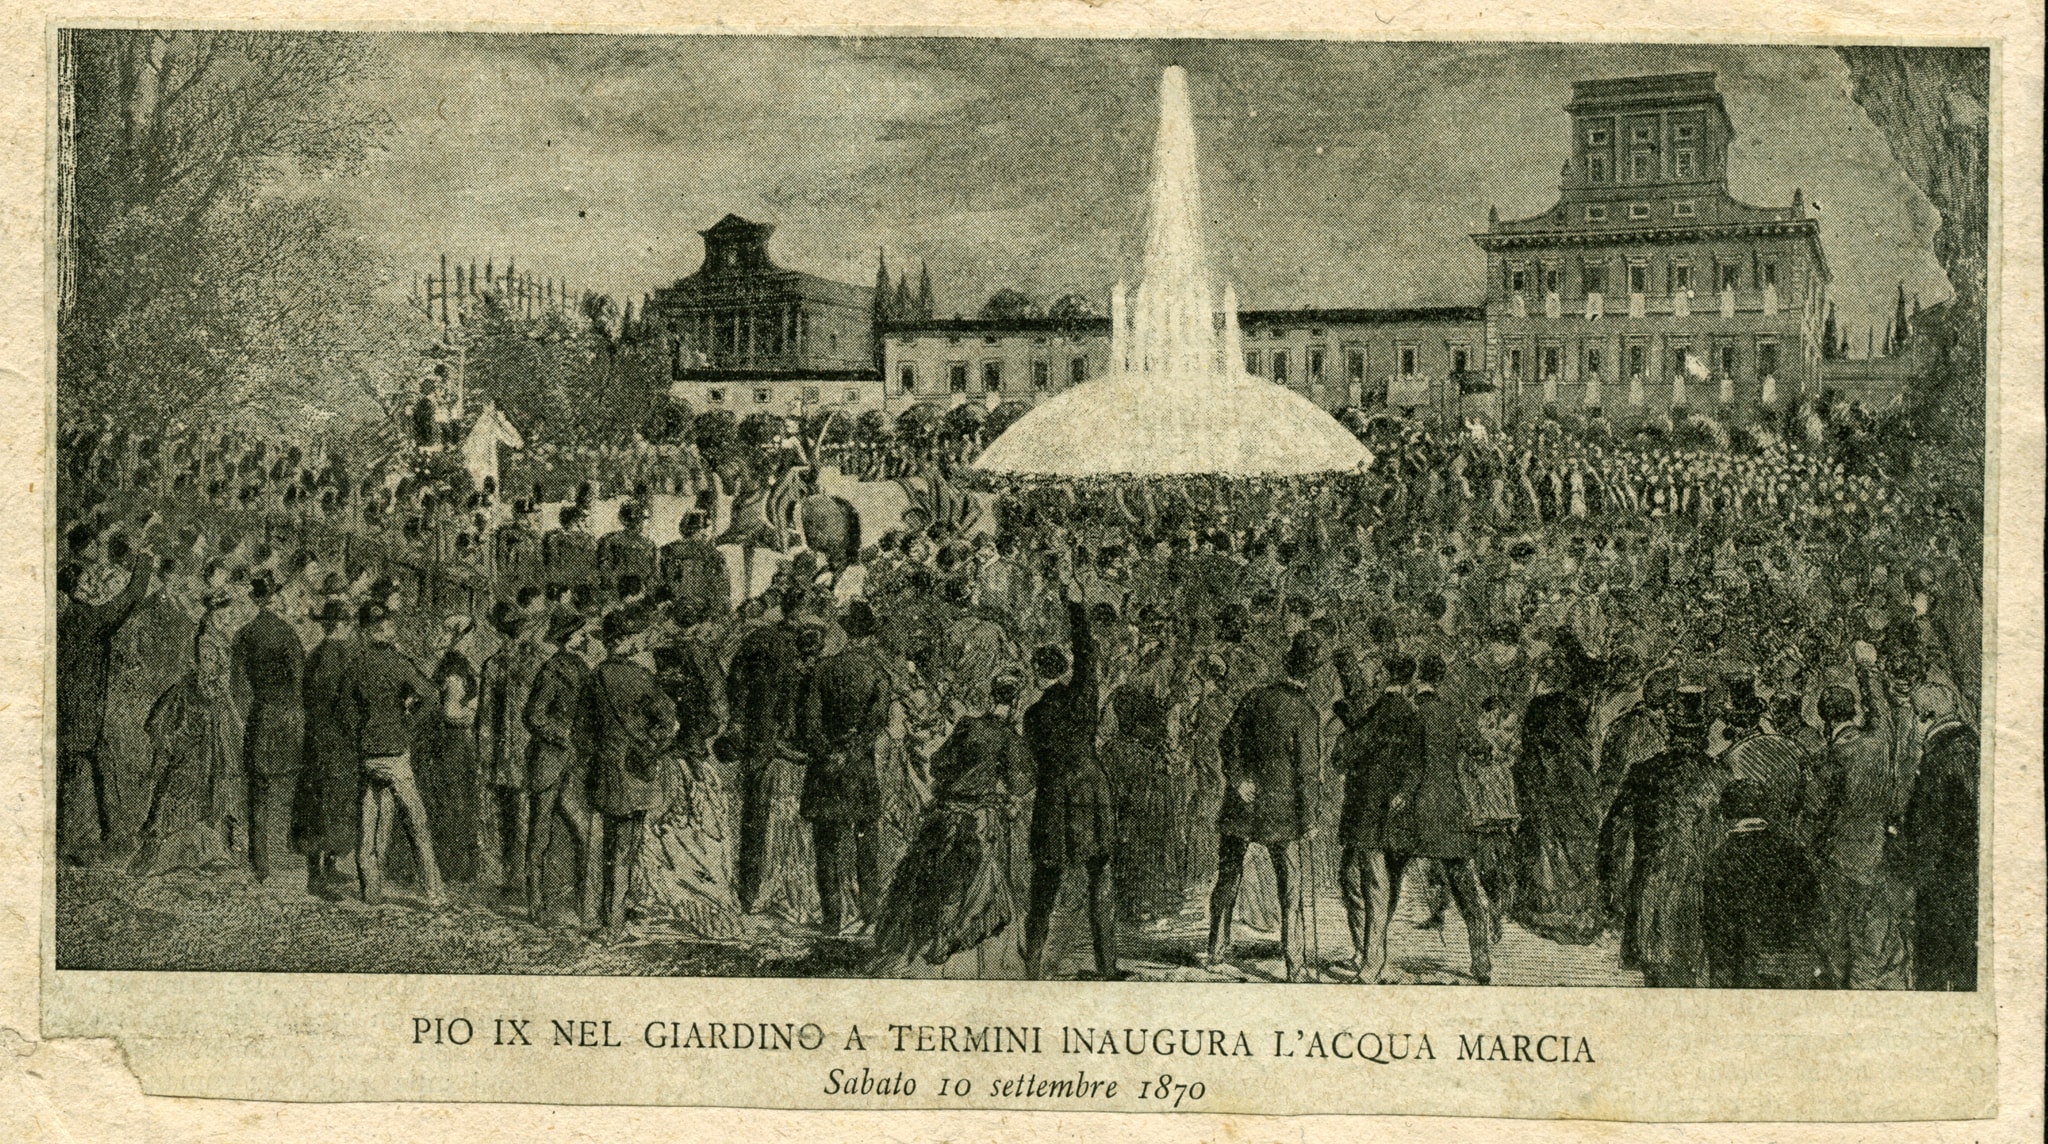 Incisione raffigurante Pio IX nel giardino a Termini che inaugura l’Acqua Marcia il 10 settembre 1870